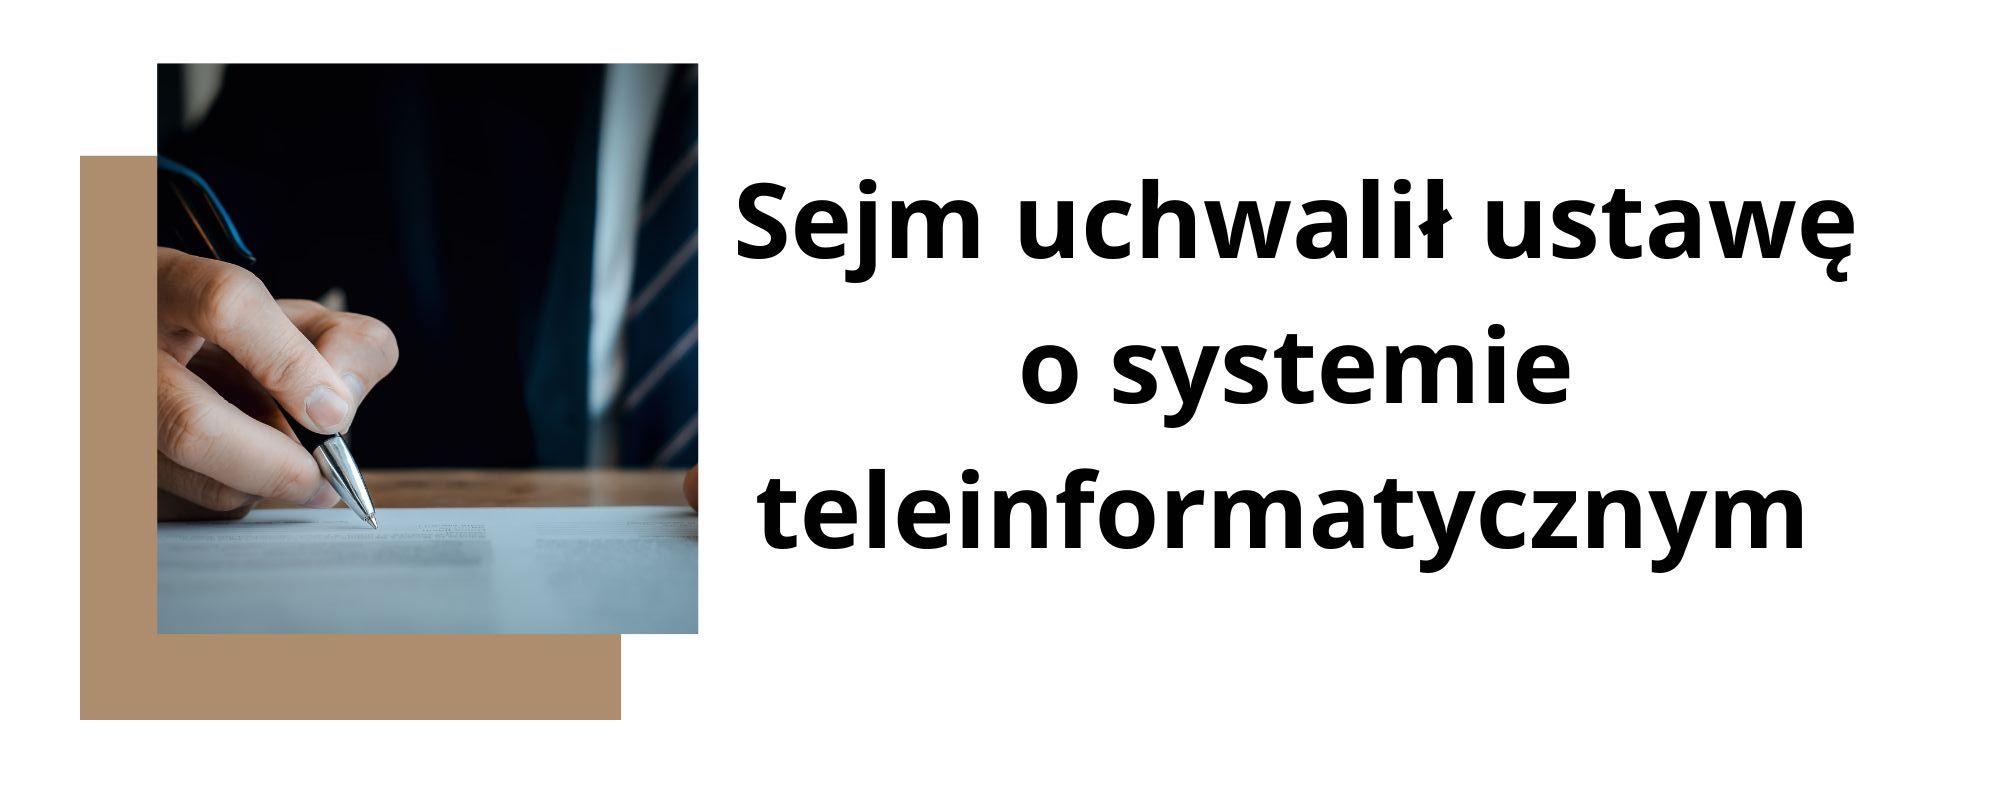 Sejm przyjął ustawę o systemie teleinformatycznym